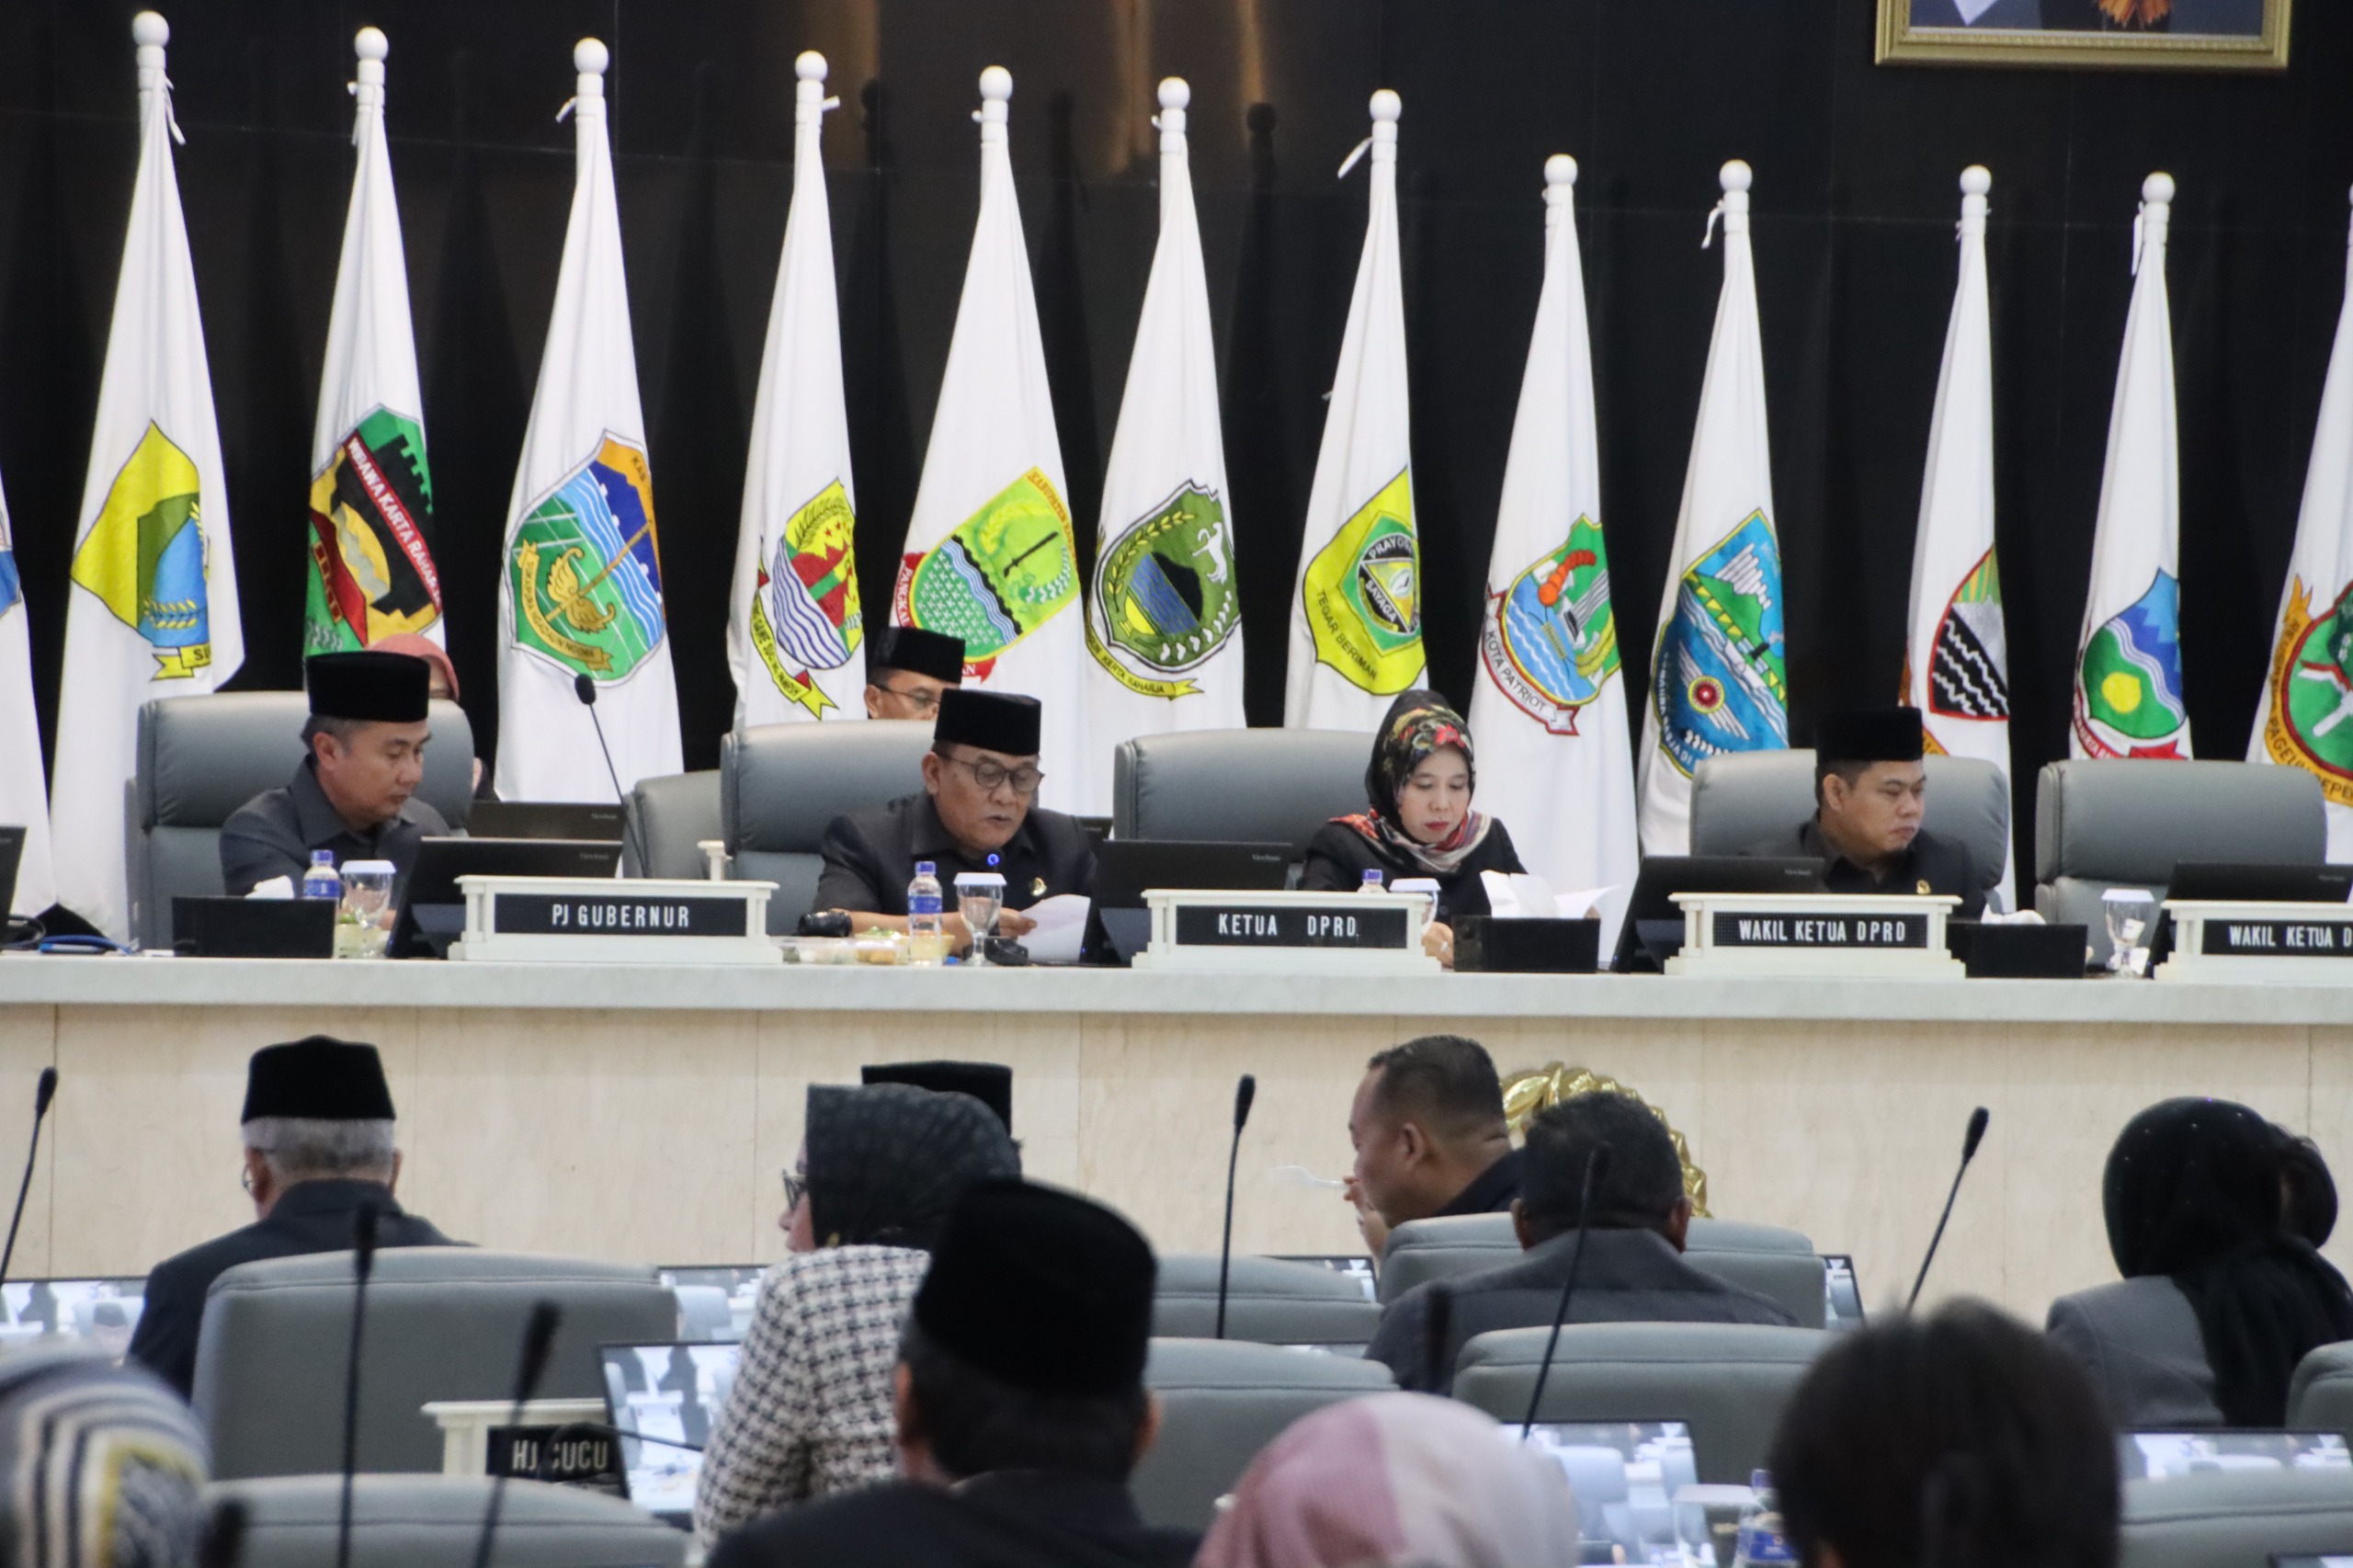 DPRD Jawa Barat Kembali Gelar Rapat Paripurna, Apa yang Dibahas?